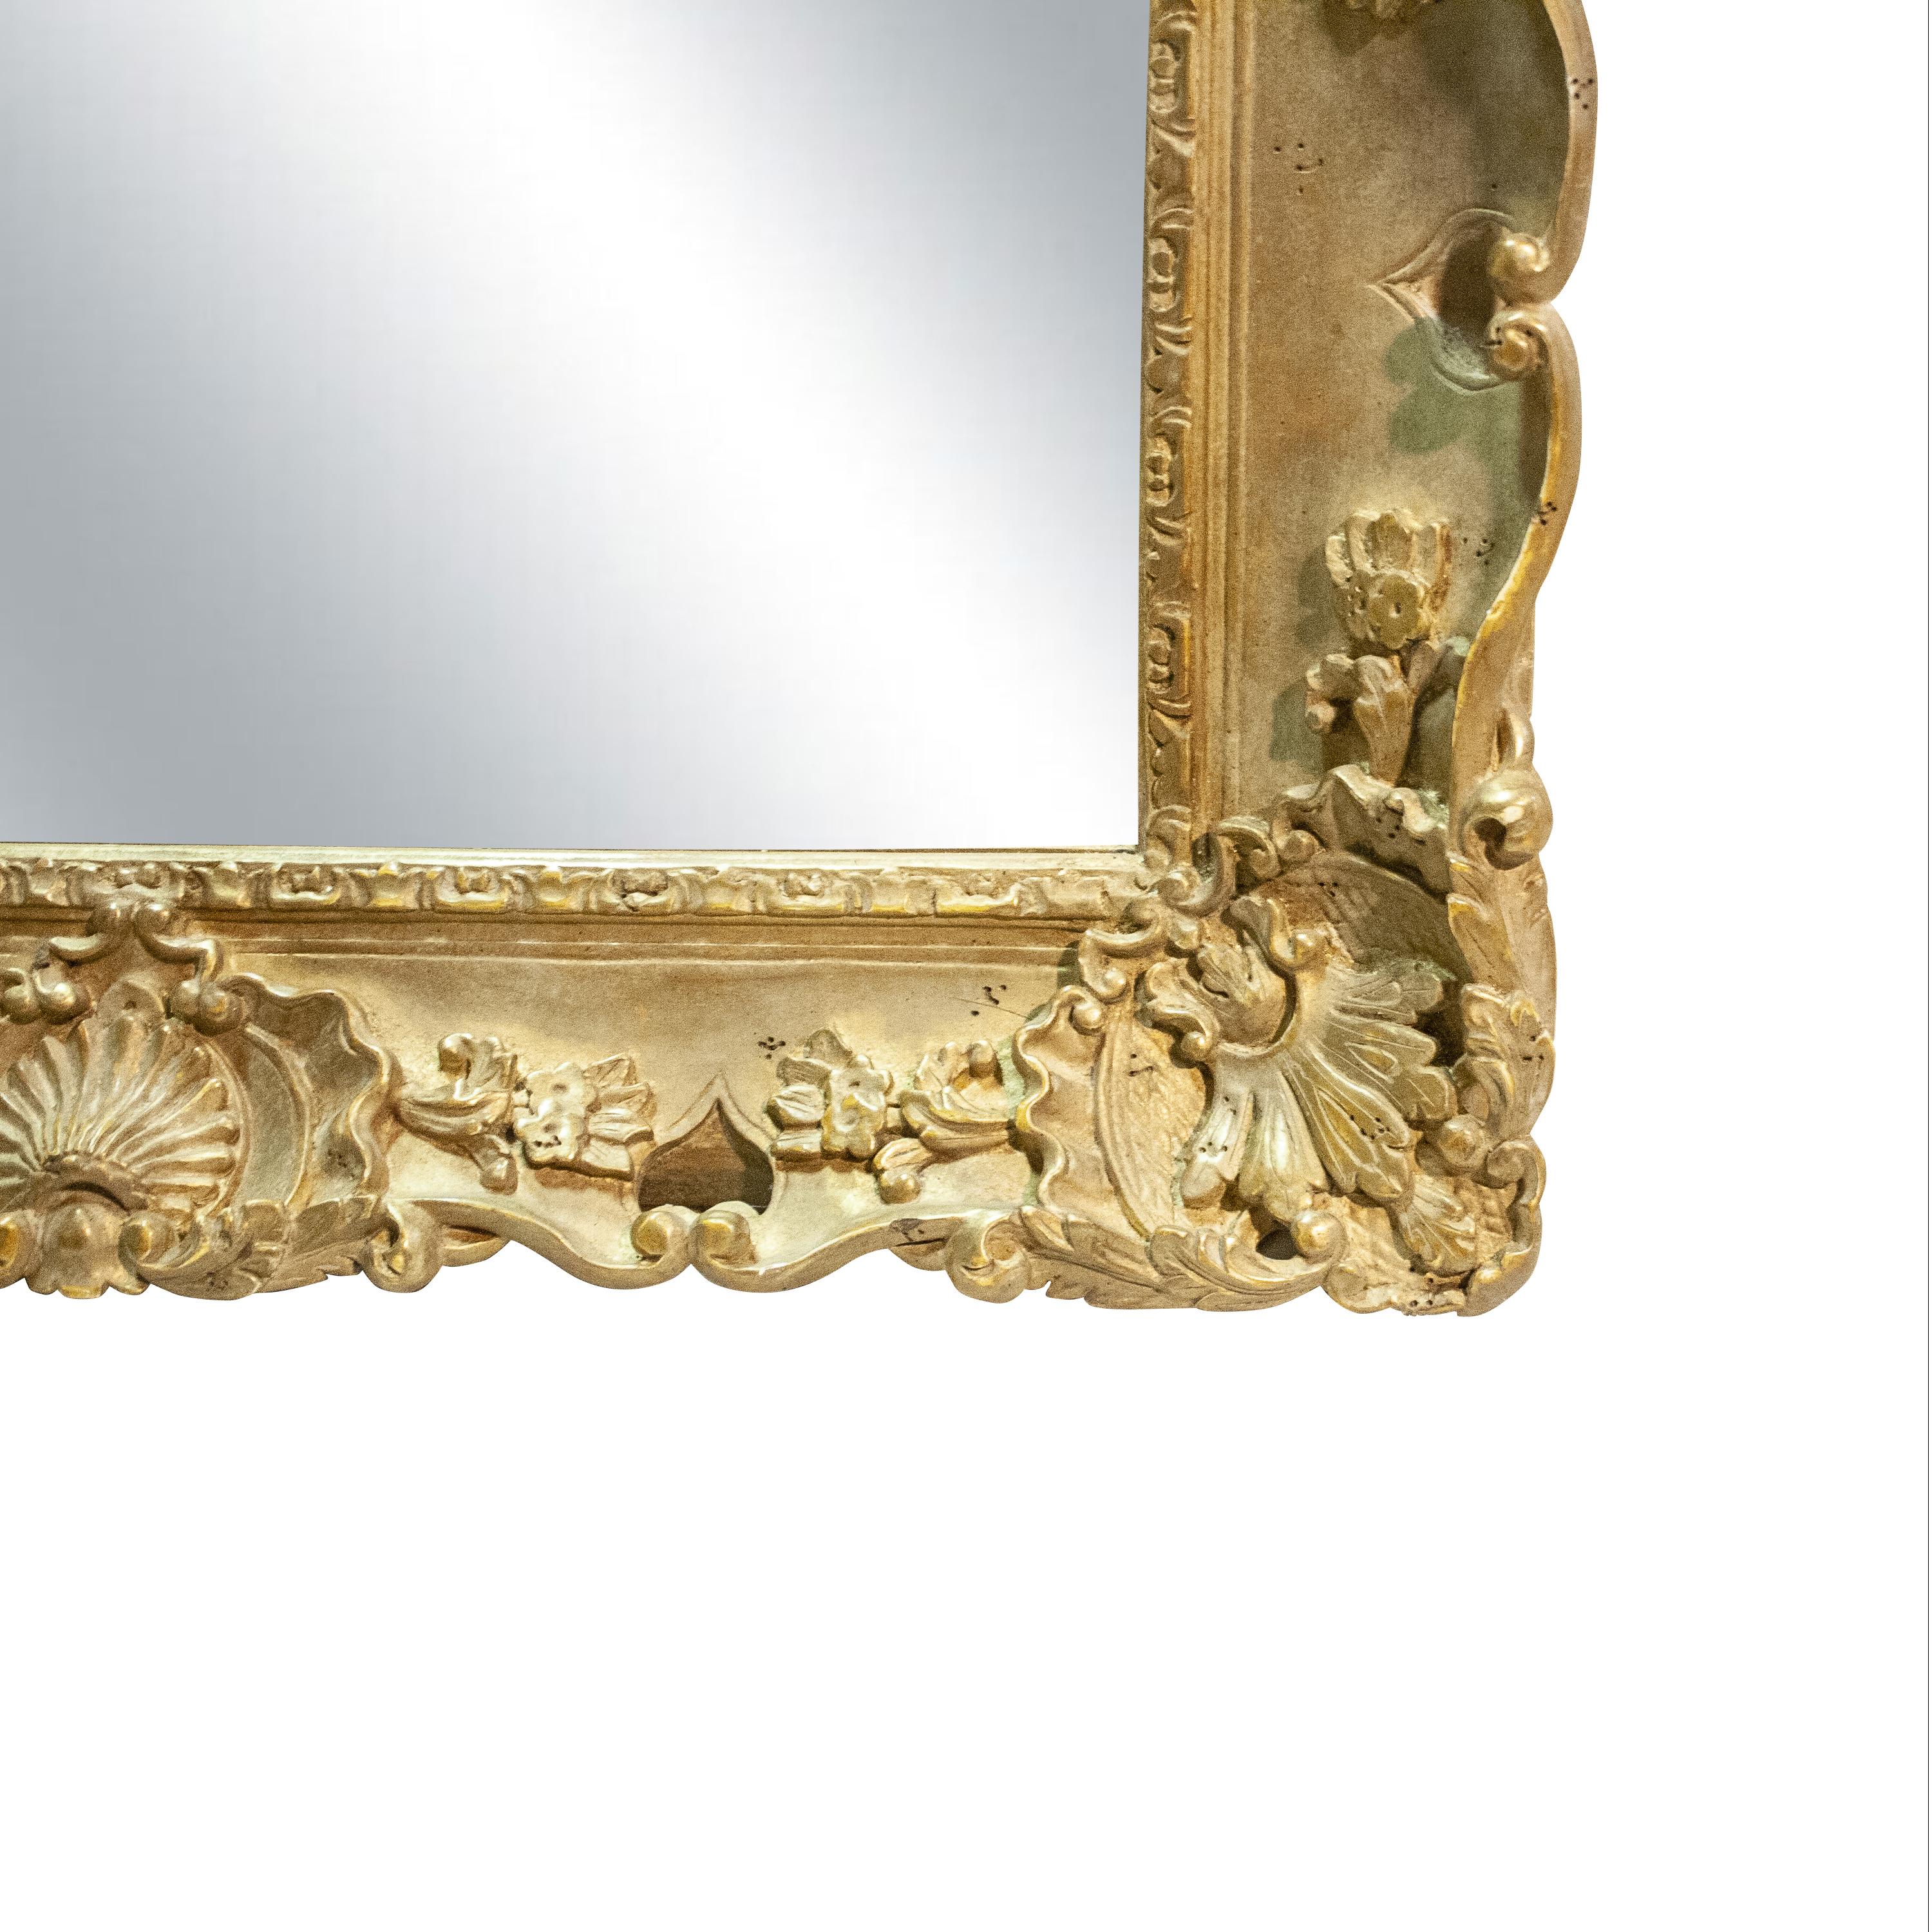 Handgefertigter geschnitzter Holzspiegel im Regency-Stil, mit Goldfolie überzogen.